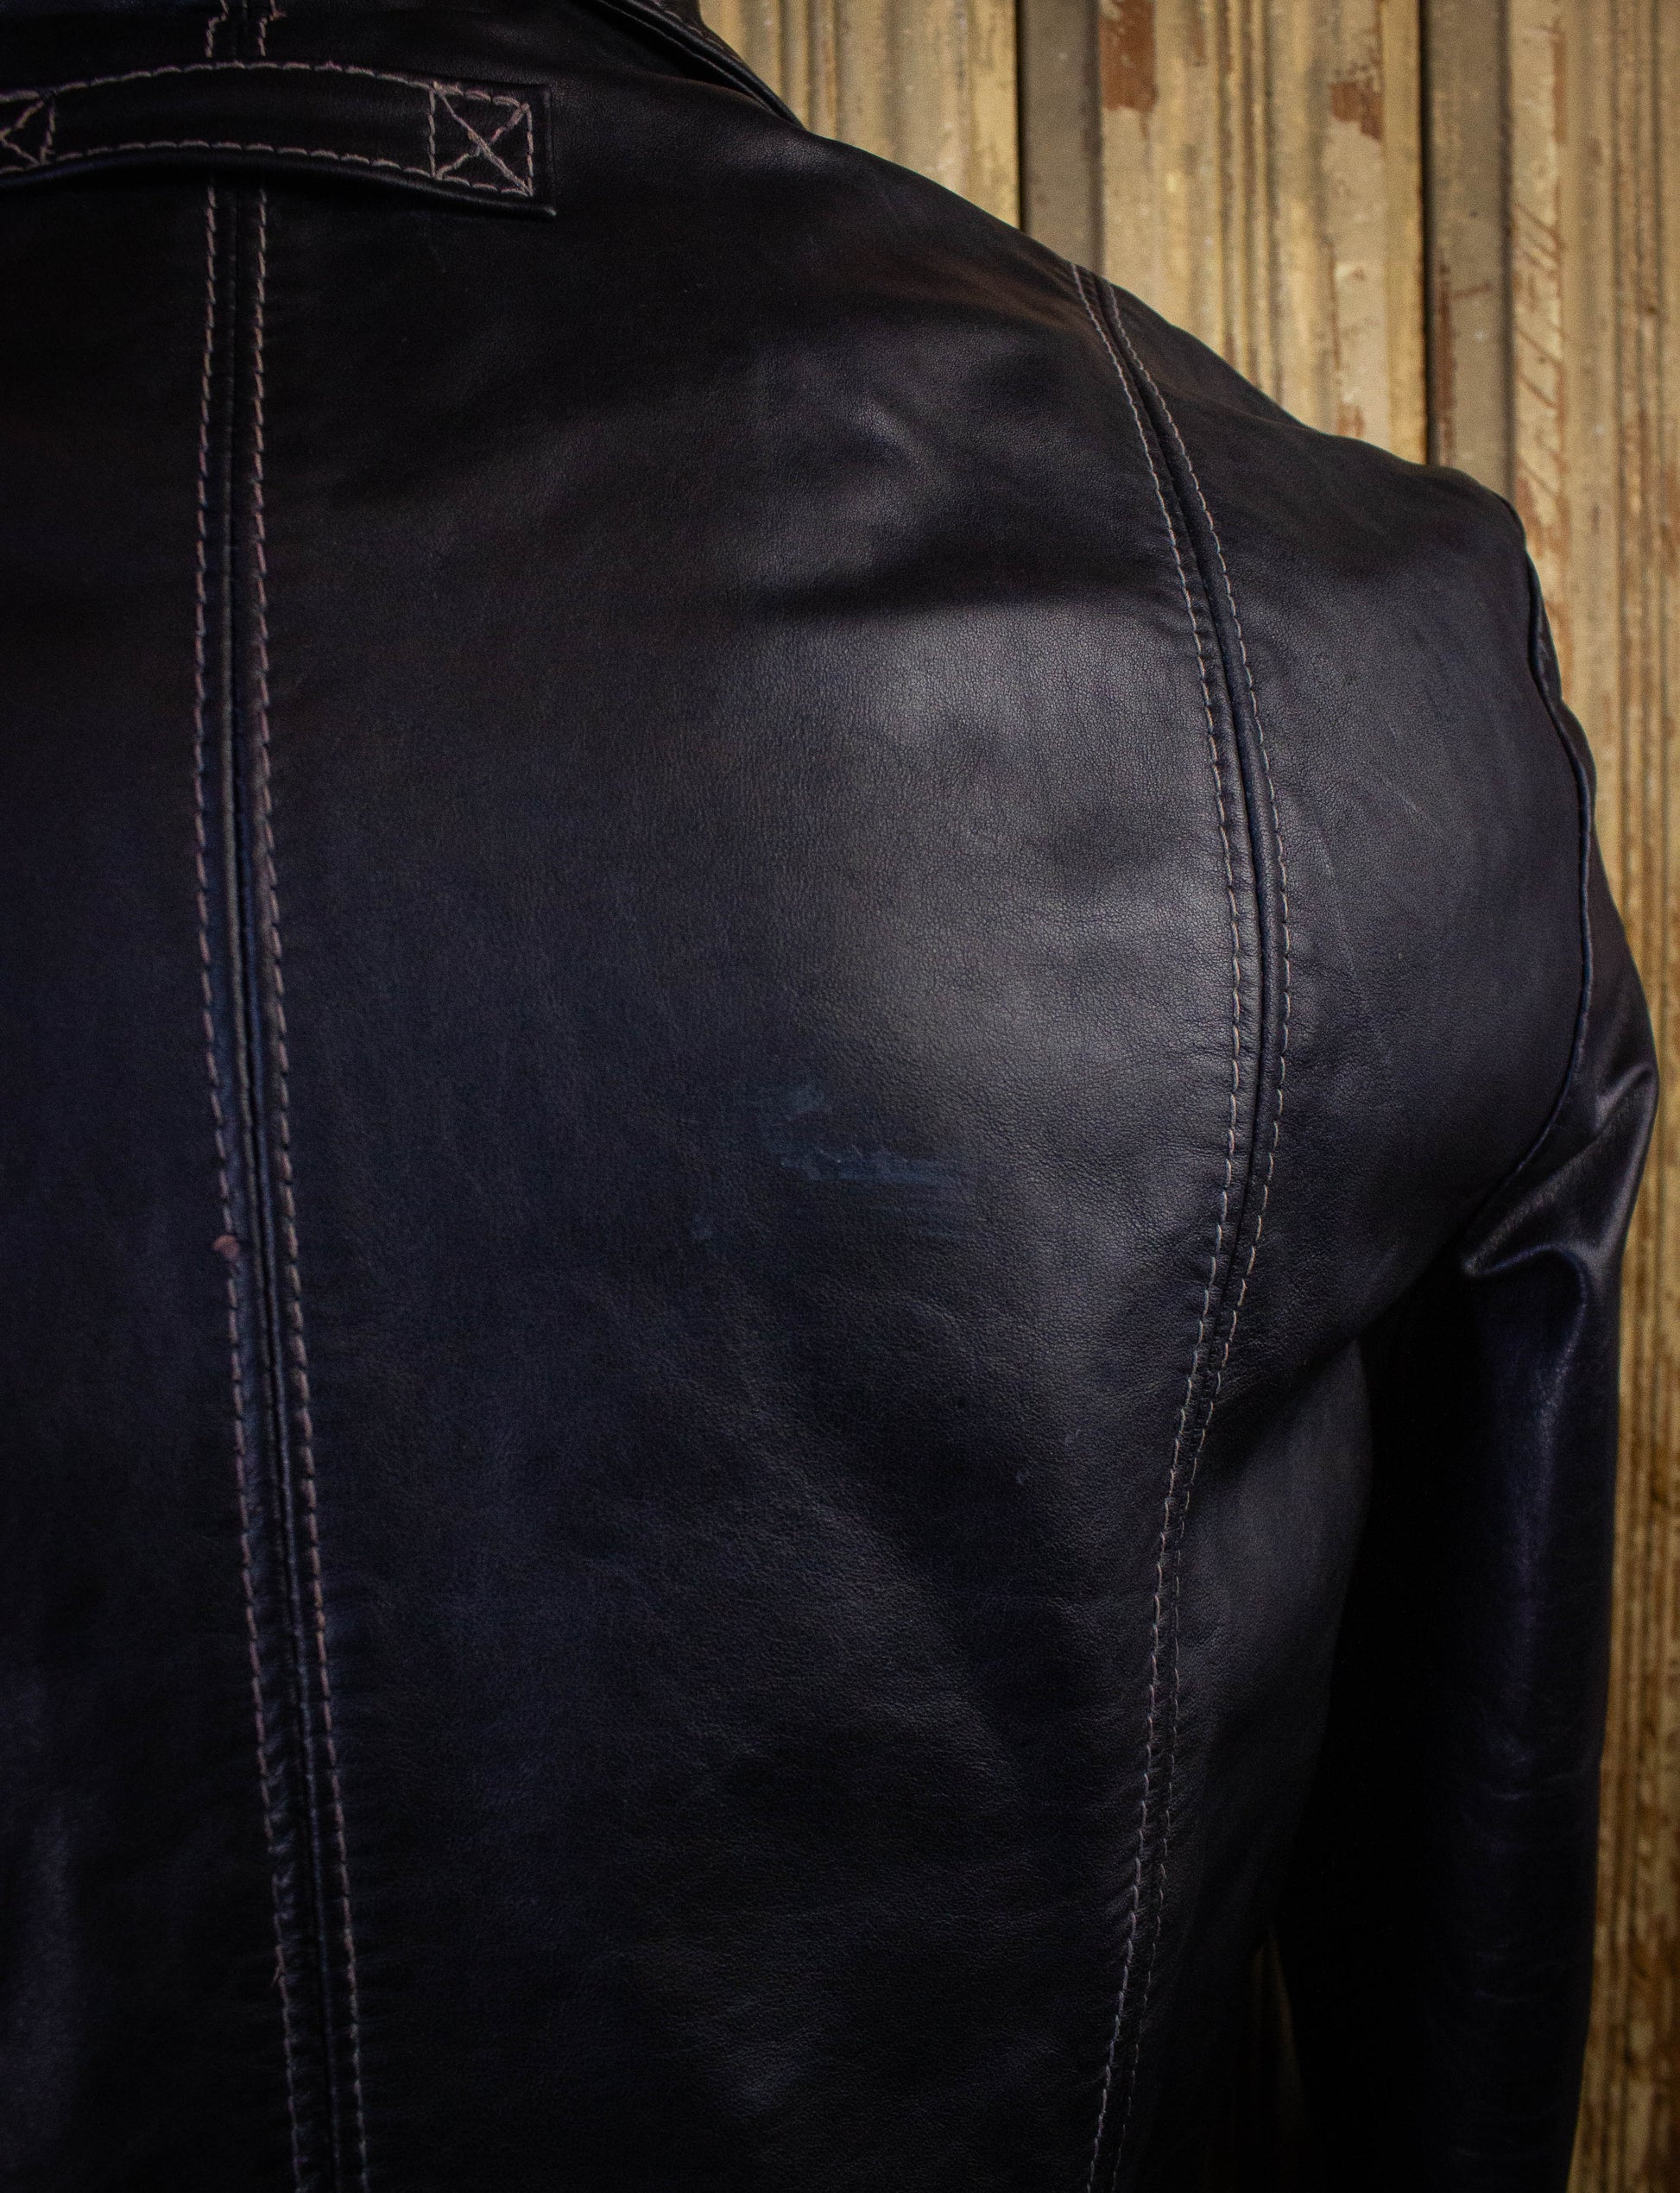 Vintage East West Musical Instruments Leather Jacket 70s Black Large